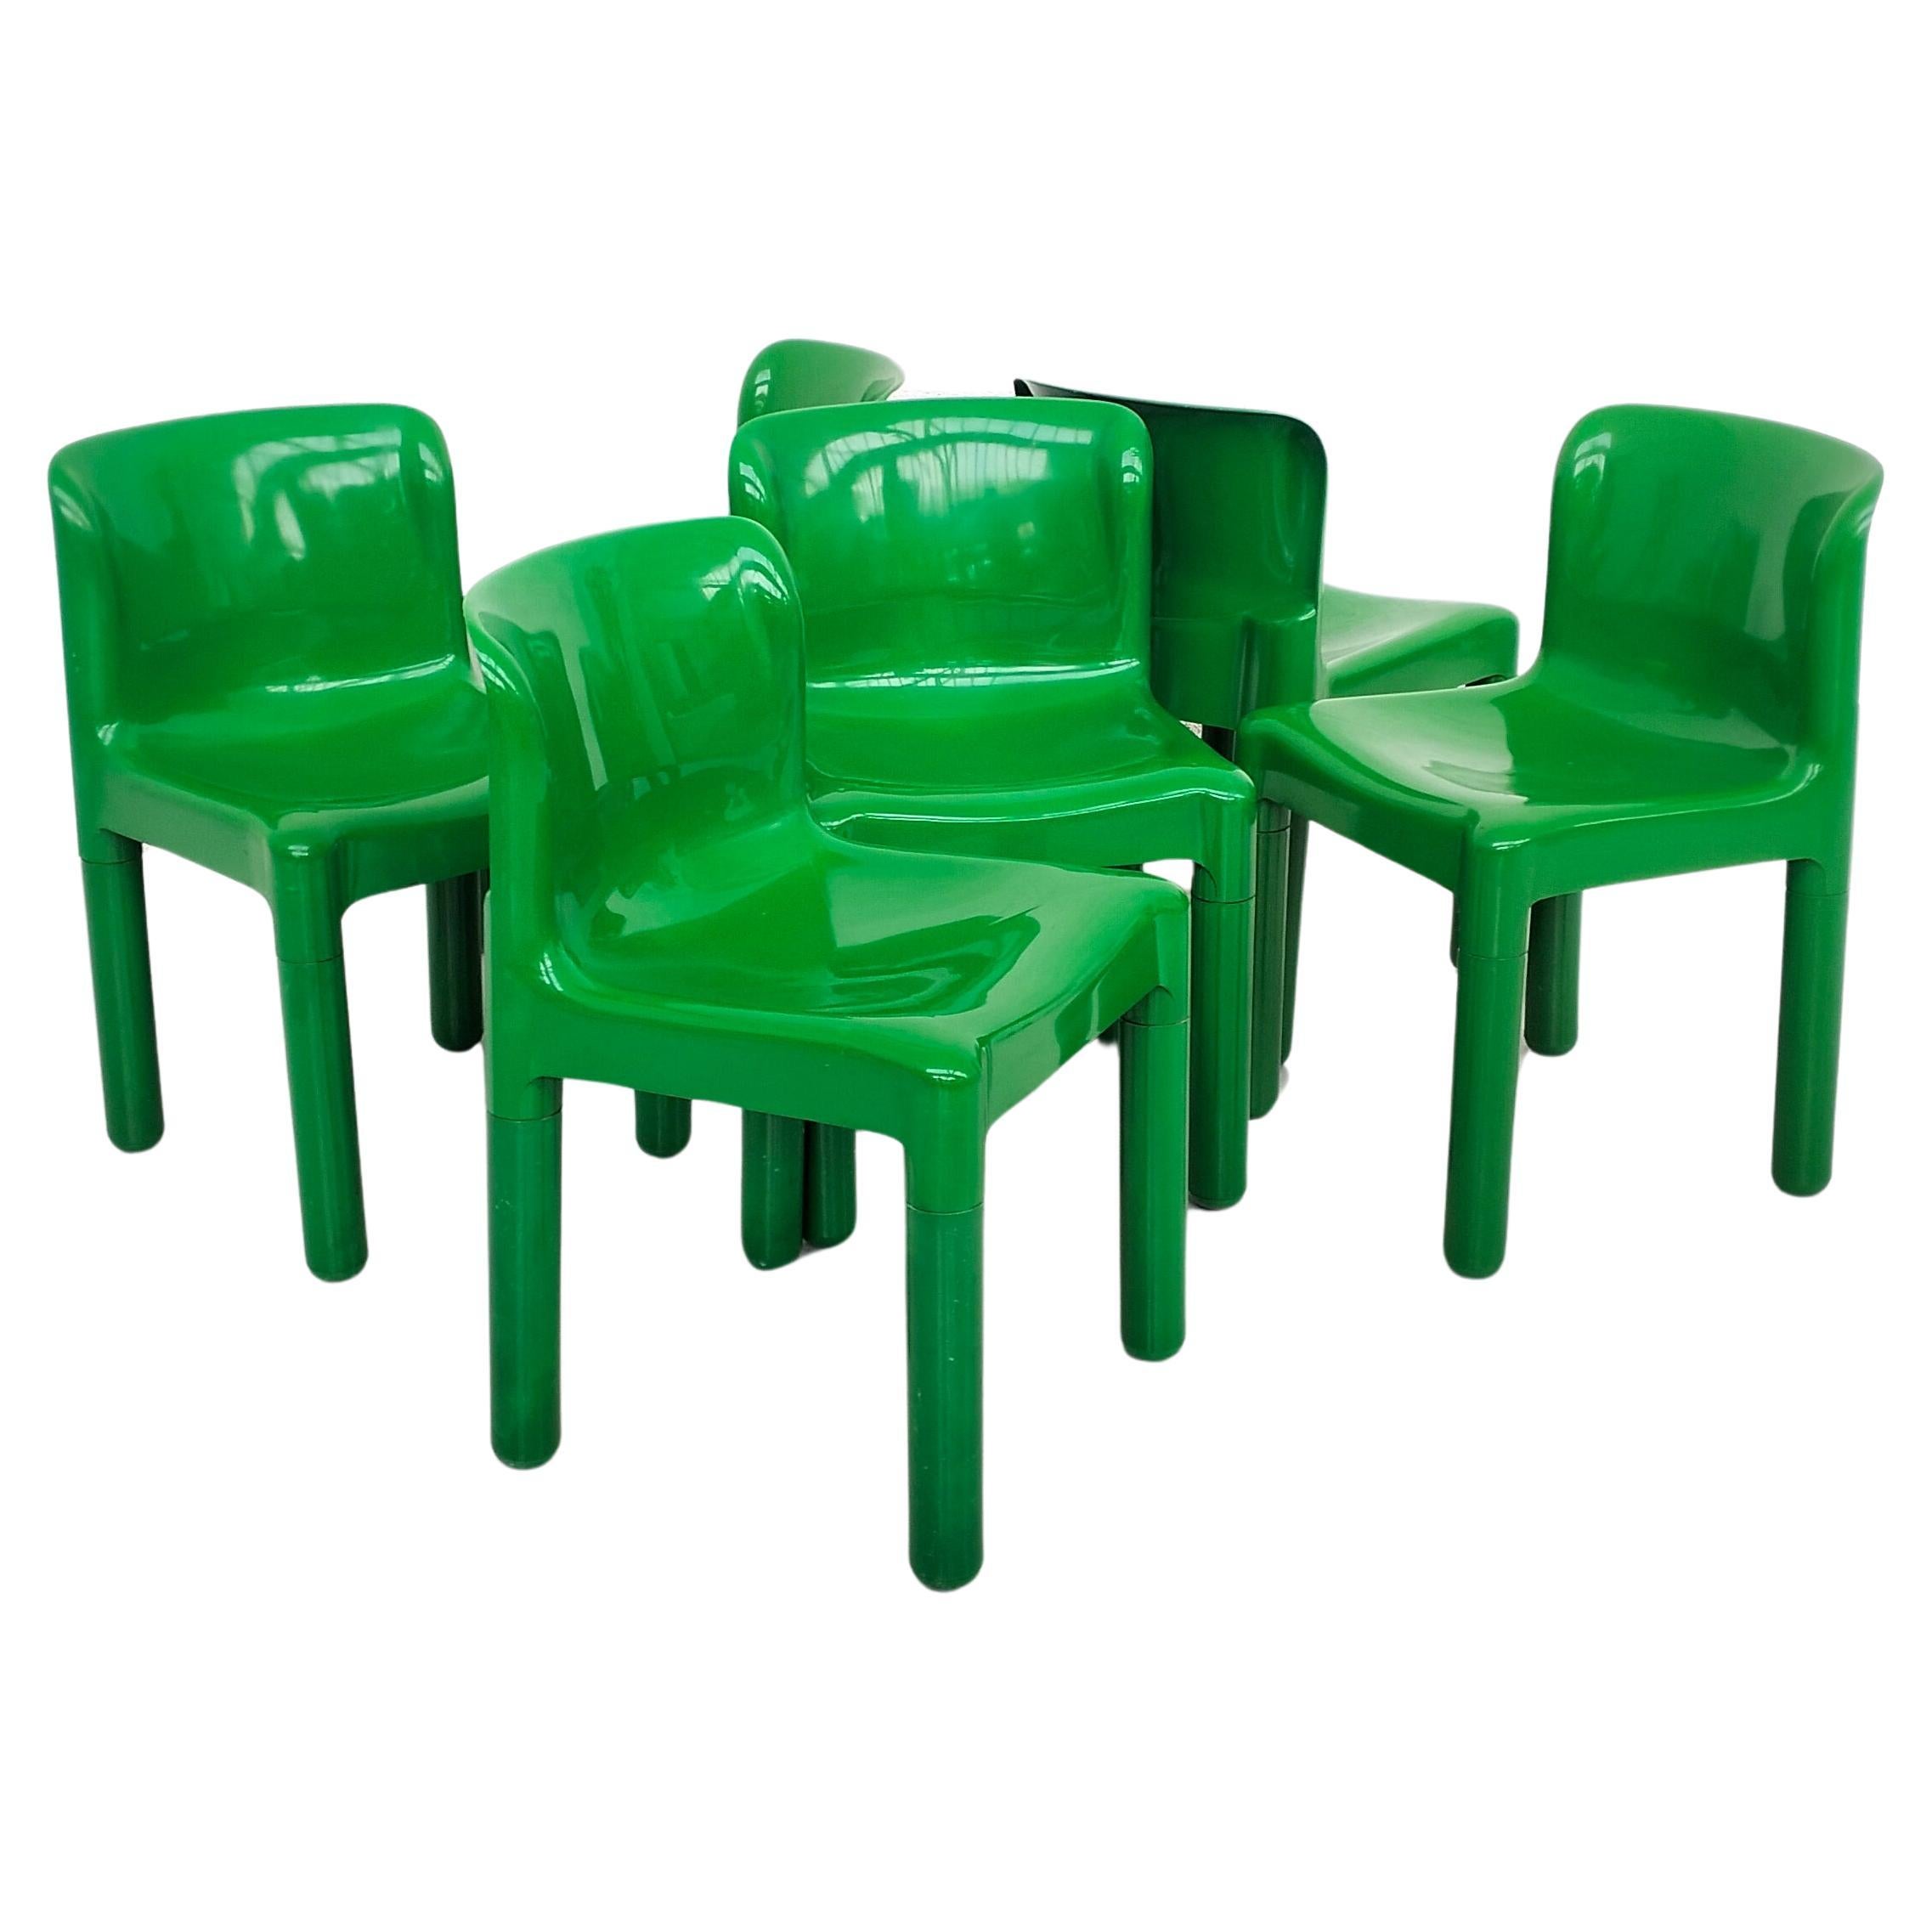 Grüne Kunststoffstühle 4875 von Carlo Bartoli für Kartell 1970er Jahre, 6-teilig